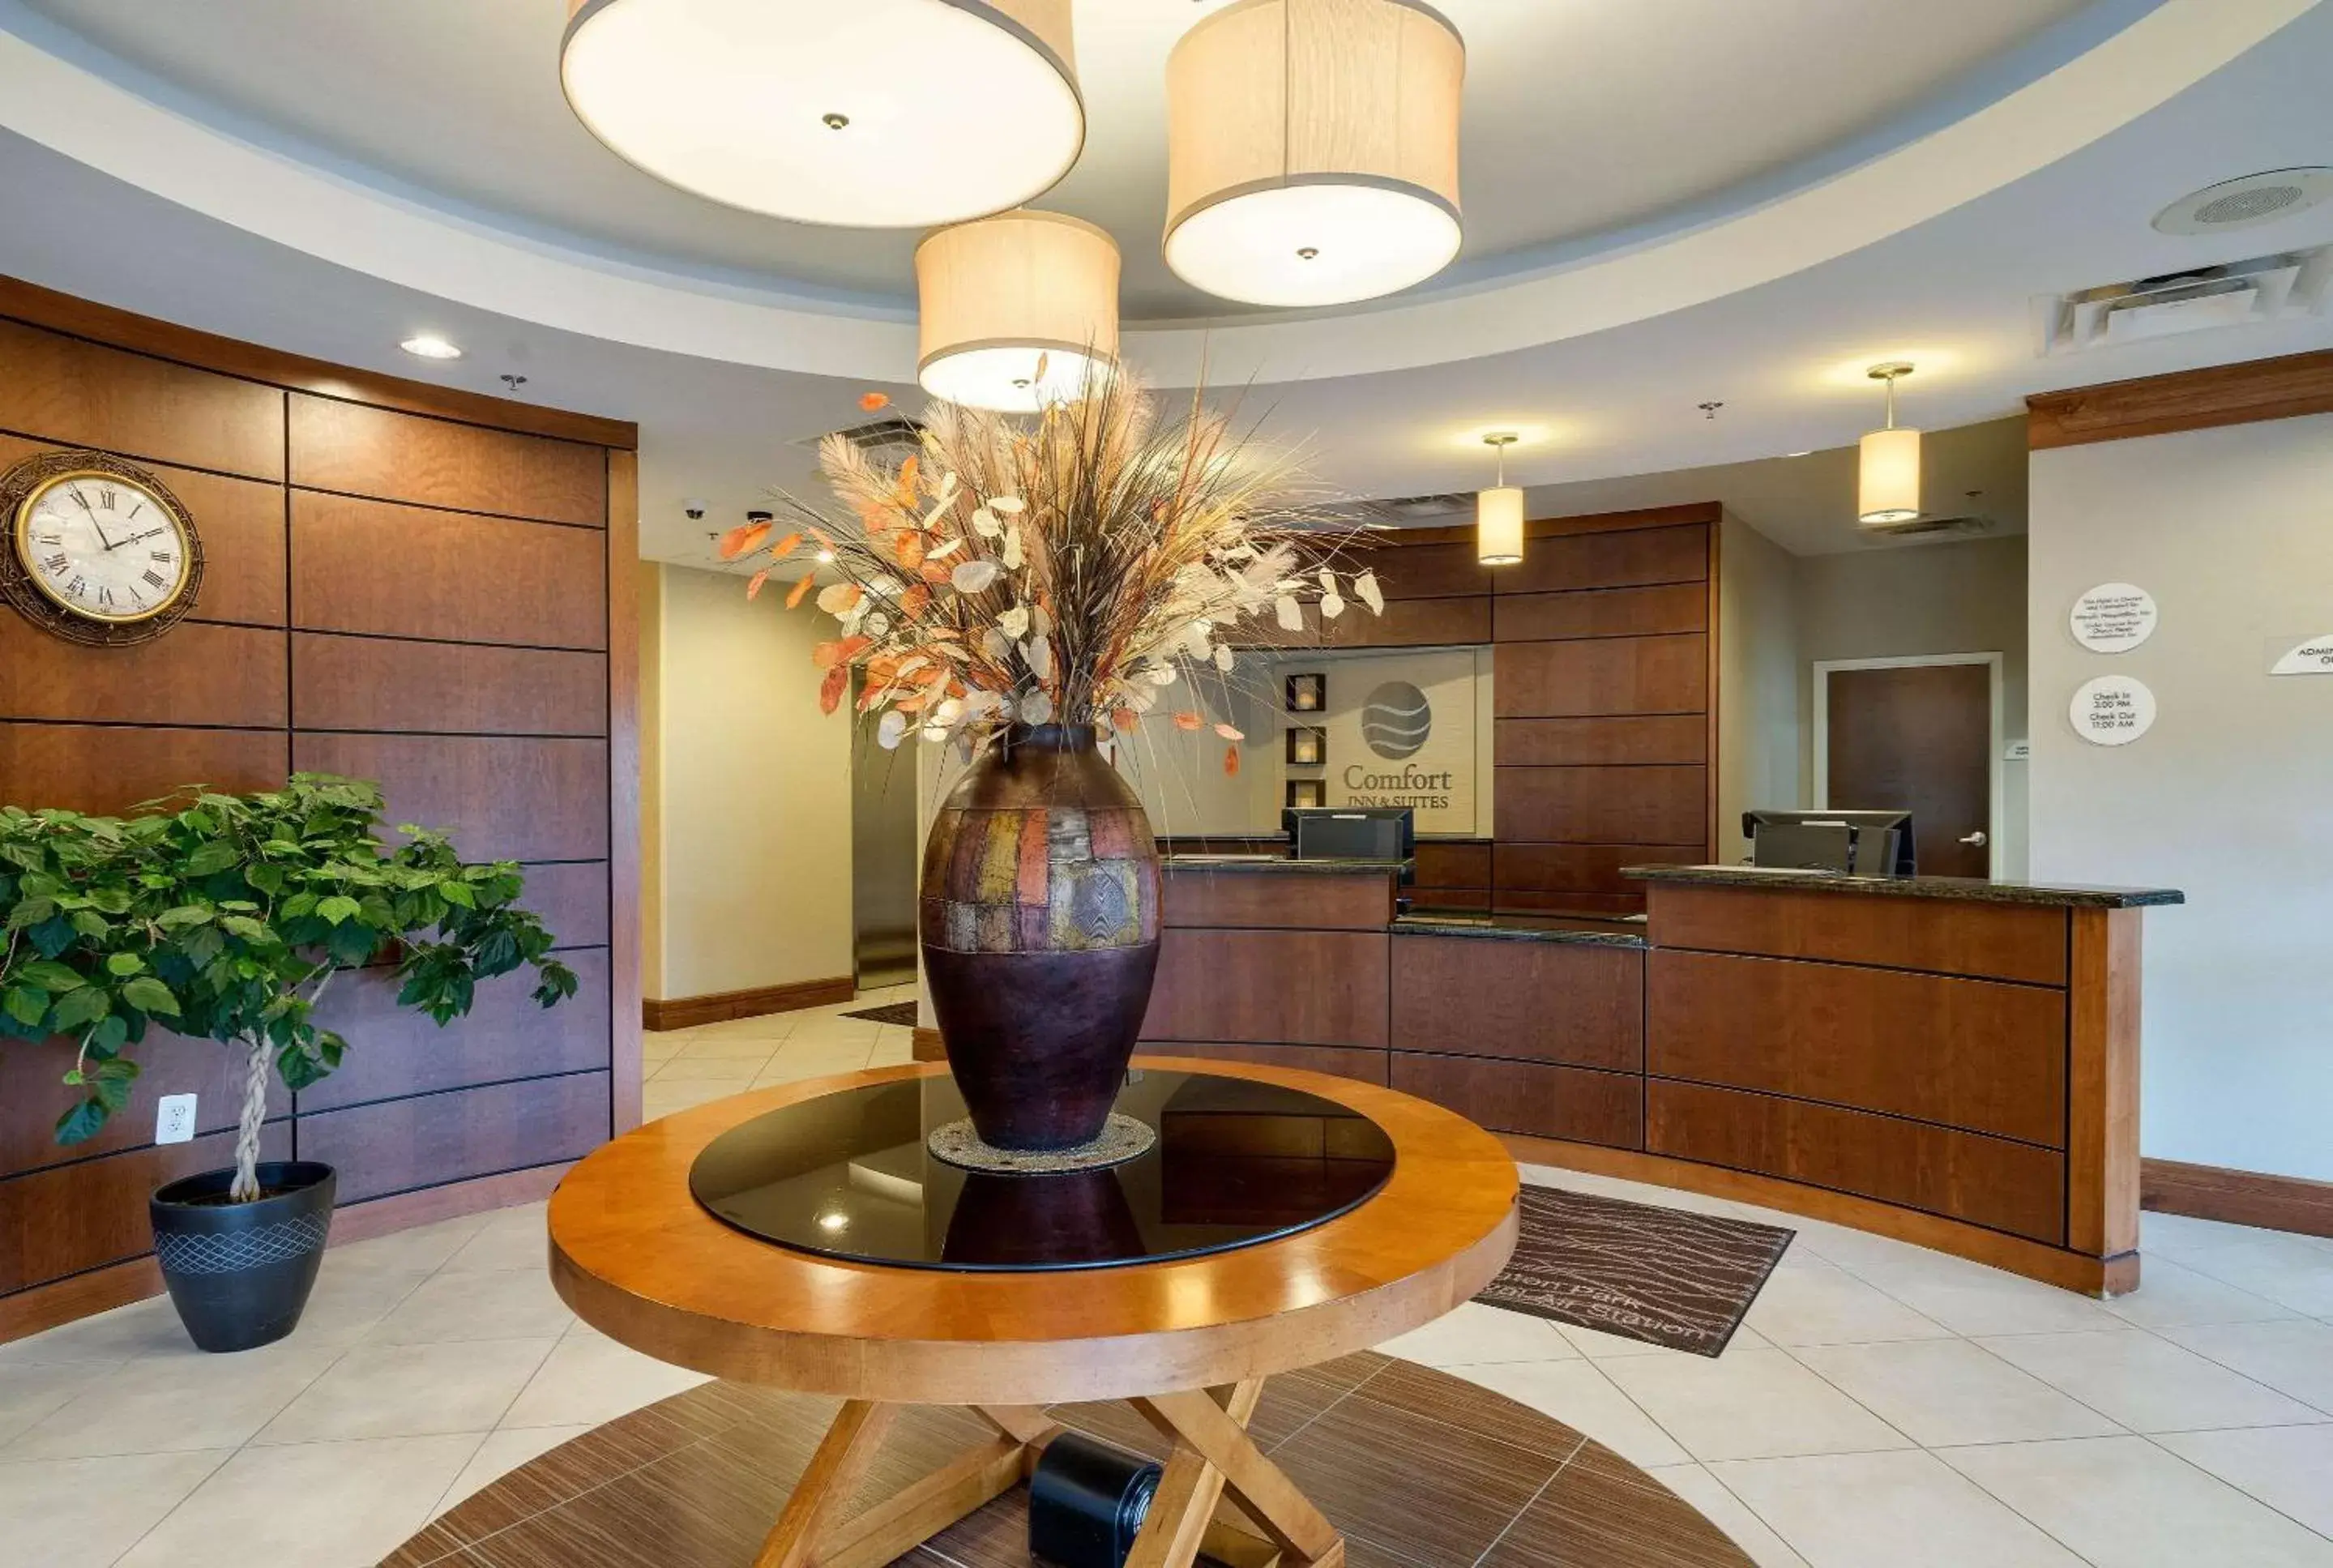 Lobby or reception, Lobby/Reception in Comfort Inn & Suites Lexington Park